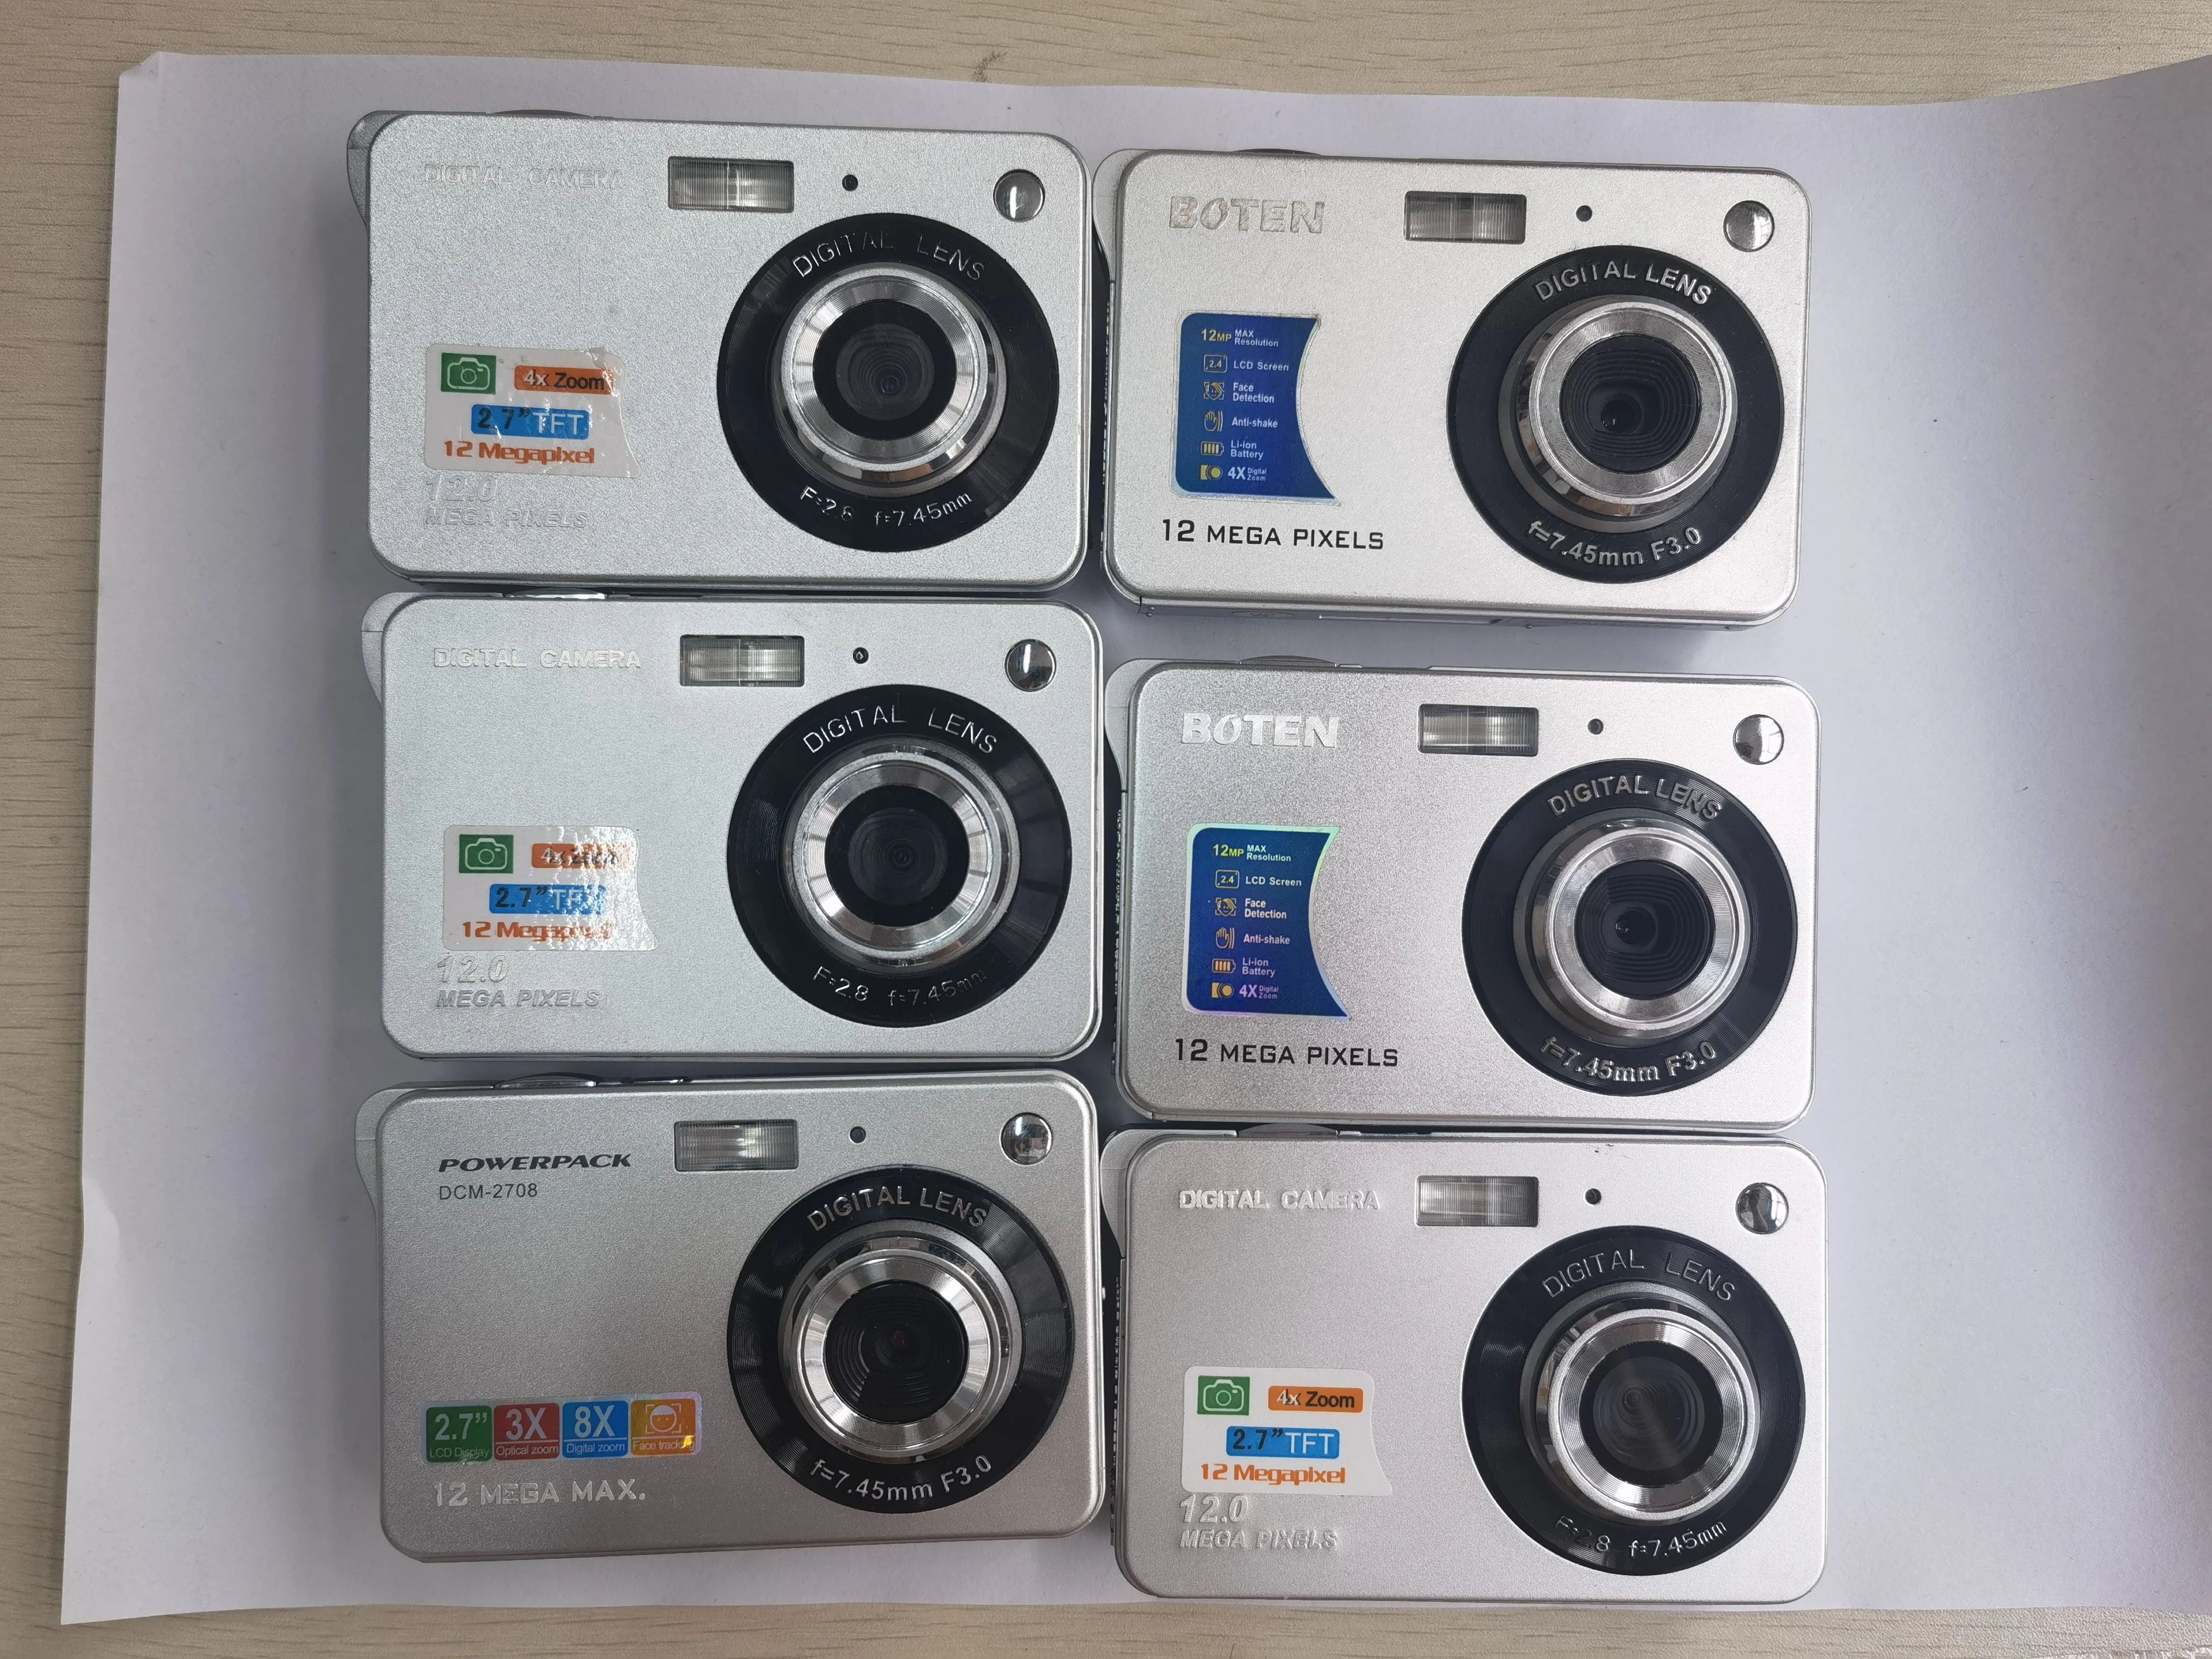 Дешевая цифровая камера 12 МП Winait с цветным дисплеем | Электроника